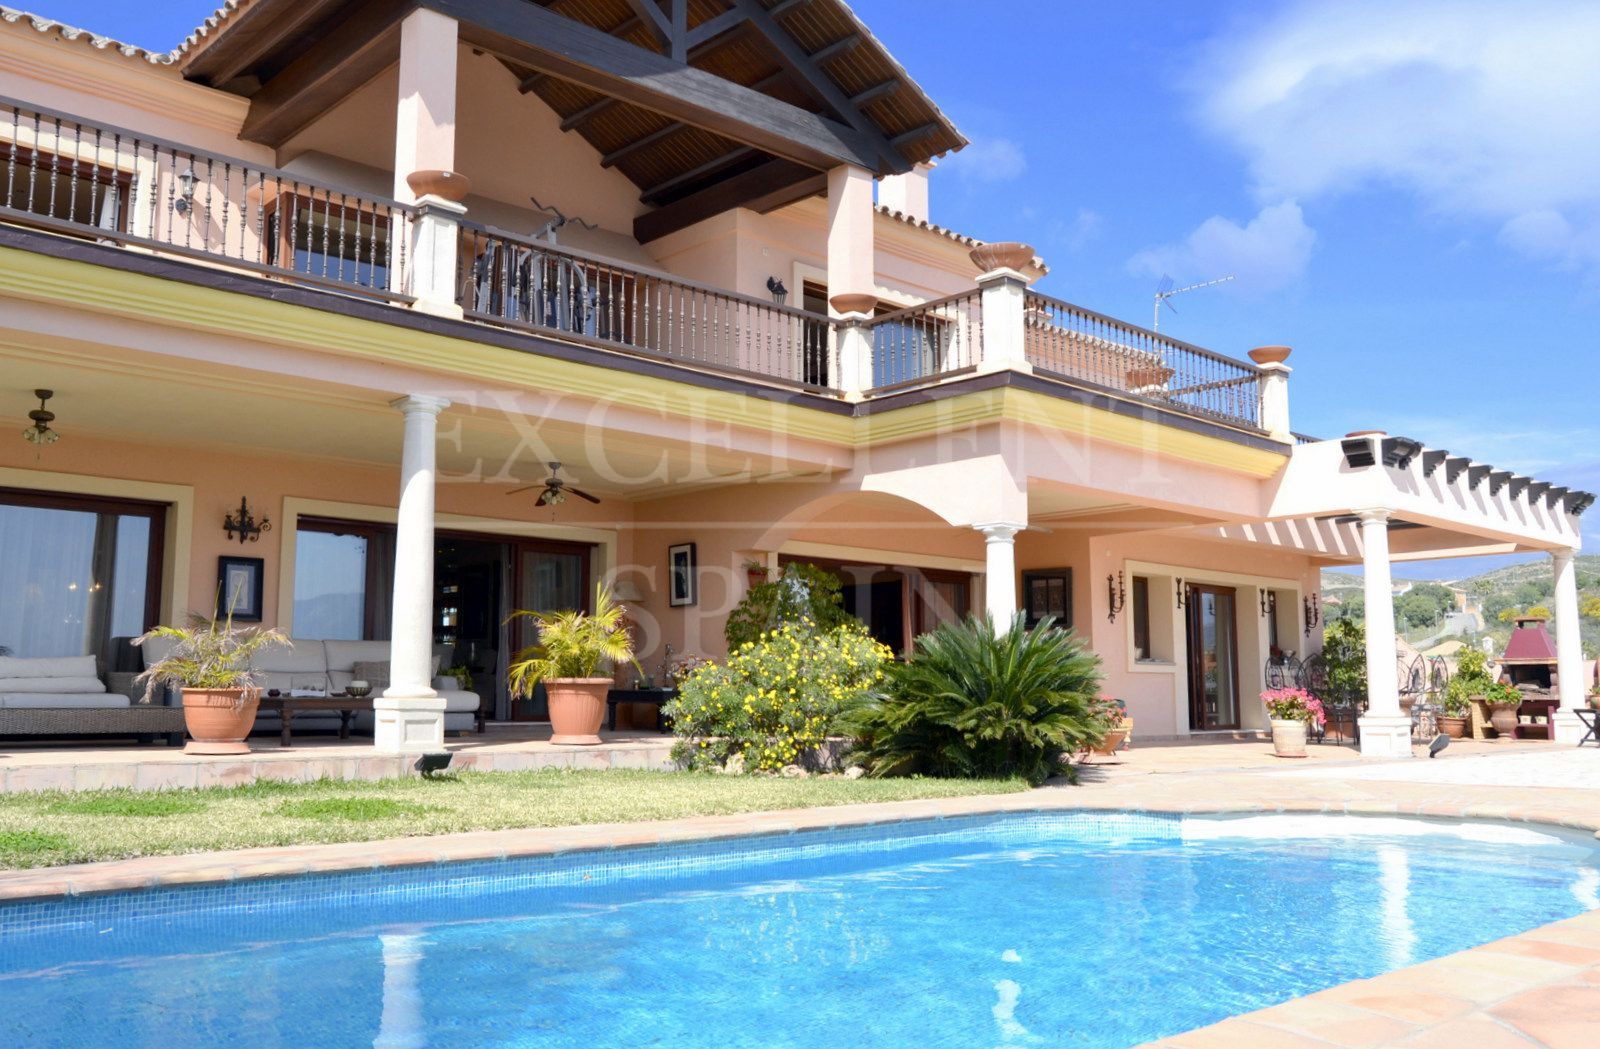 La Alqueria, Benahavis, Costa del Sol, fabulous villa for sale